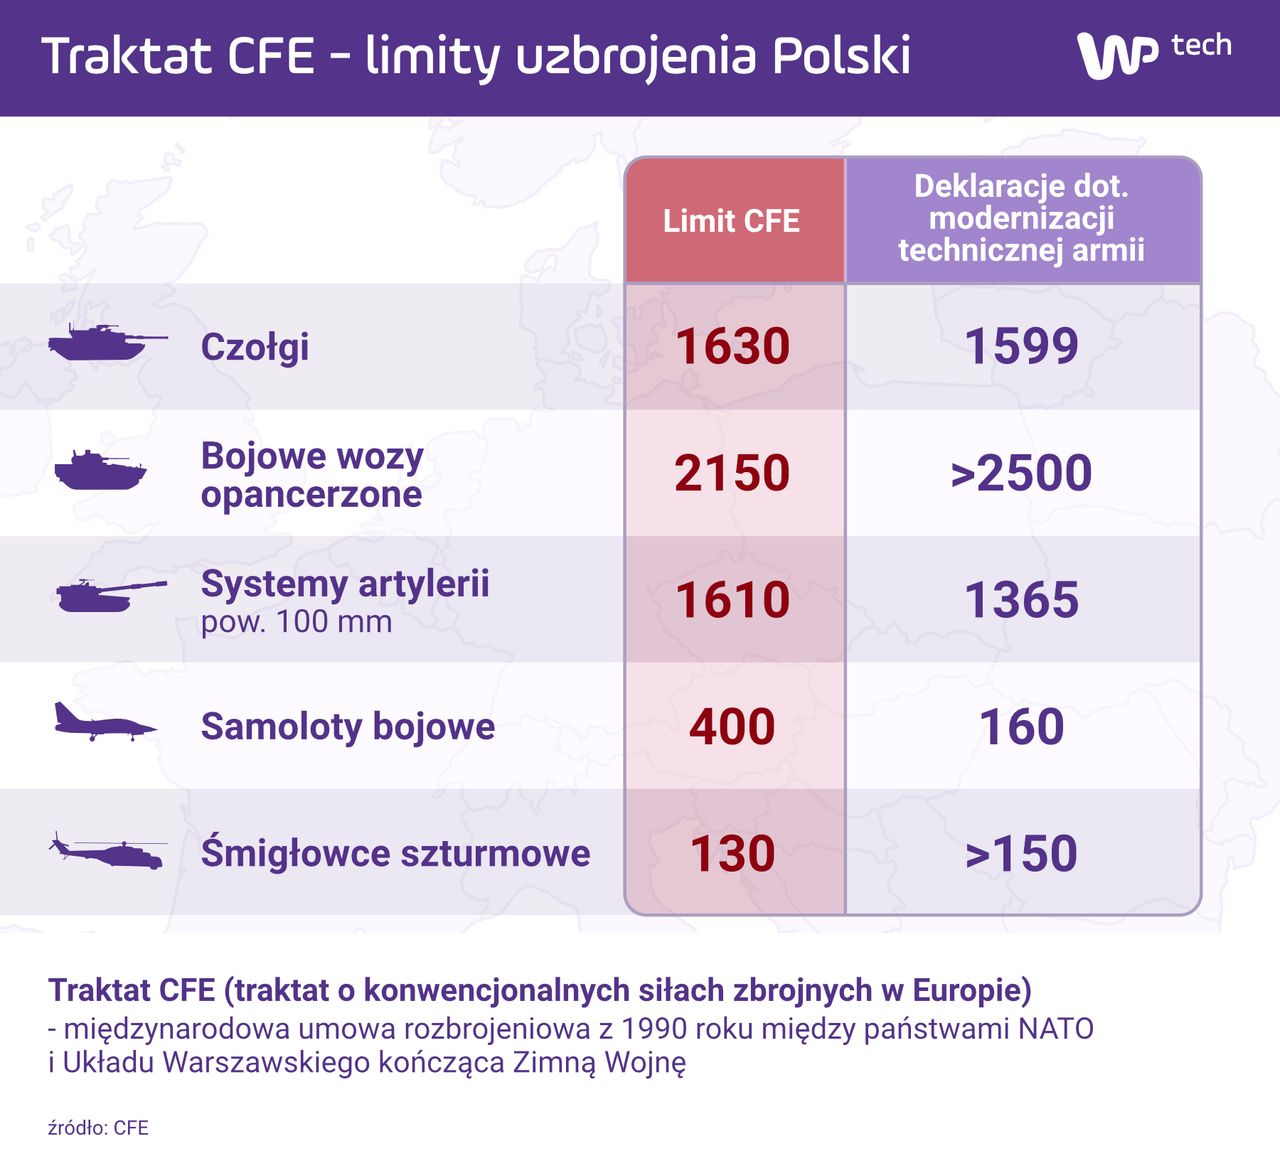 Modernizując armię Polska może przekroczyć limity narzucone przez CFE